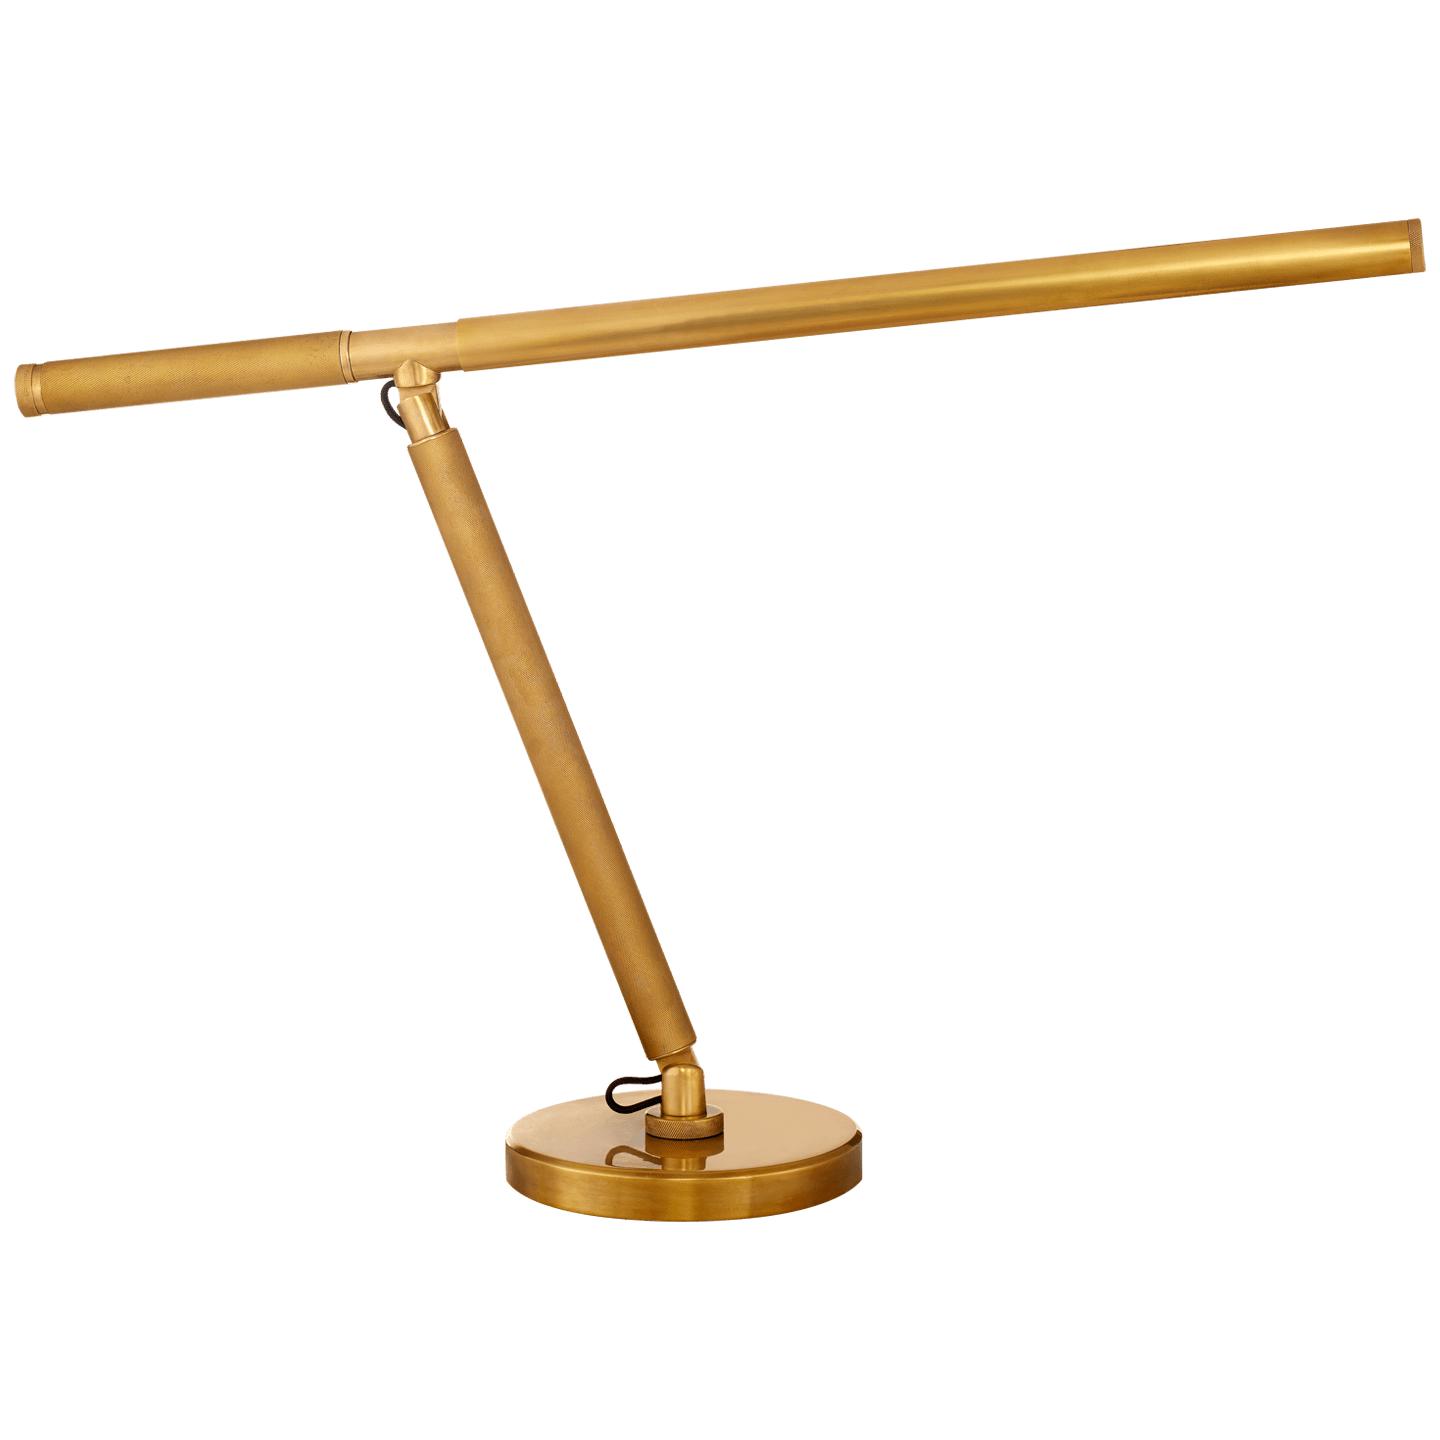 Купить Настольная лампа Barrett Knurled Boom Arm Desk Light в интернет-магазине roooms.ru